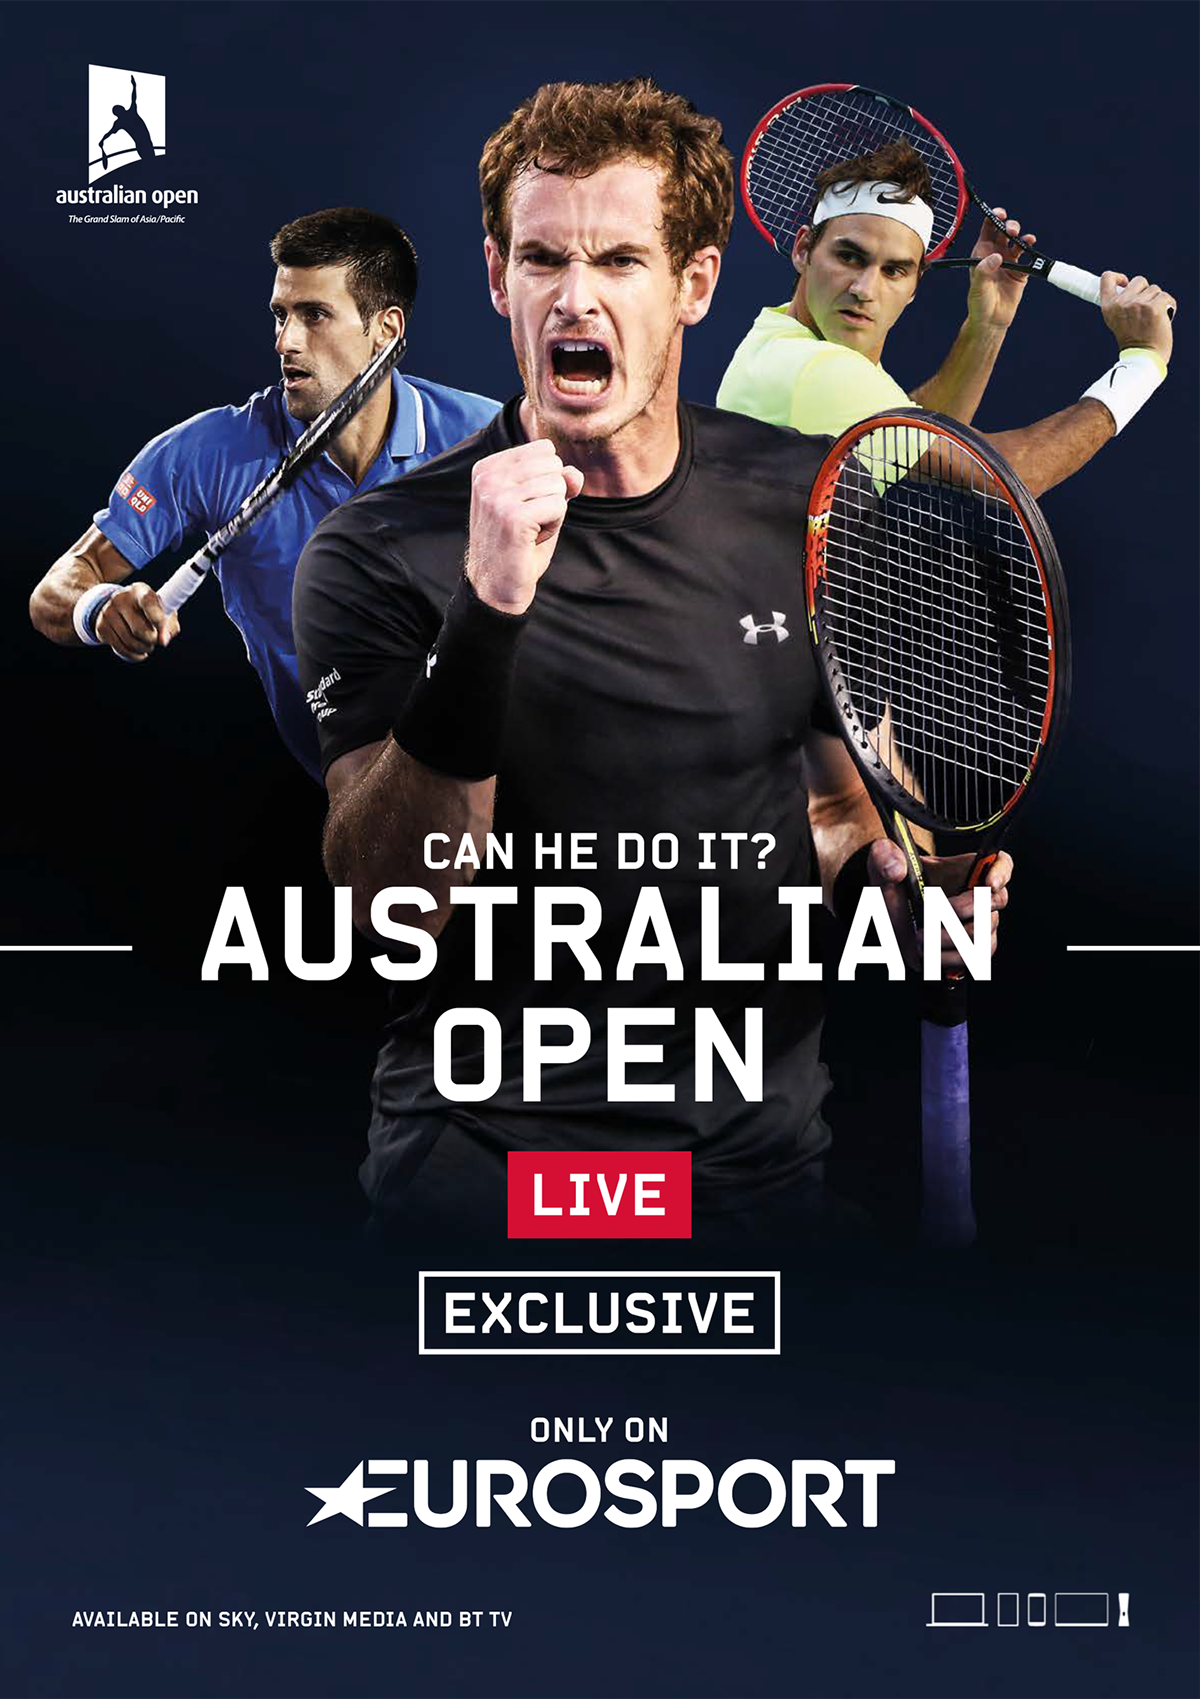 Eurosport Australian Open 2016 on Behance